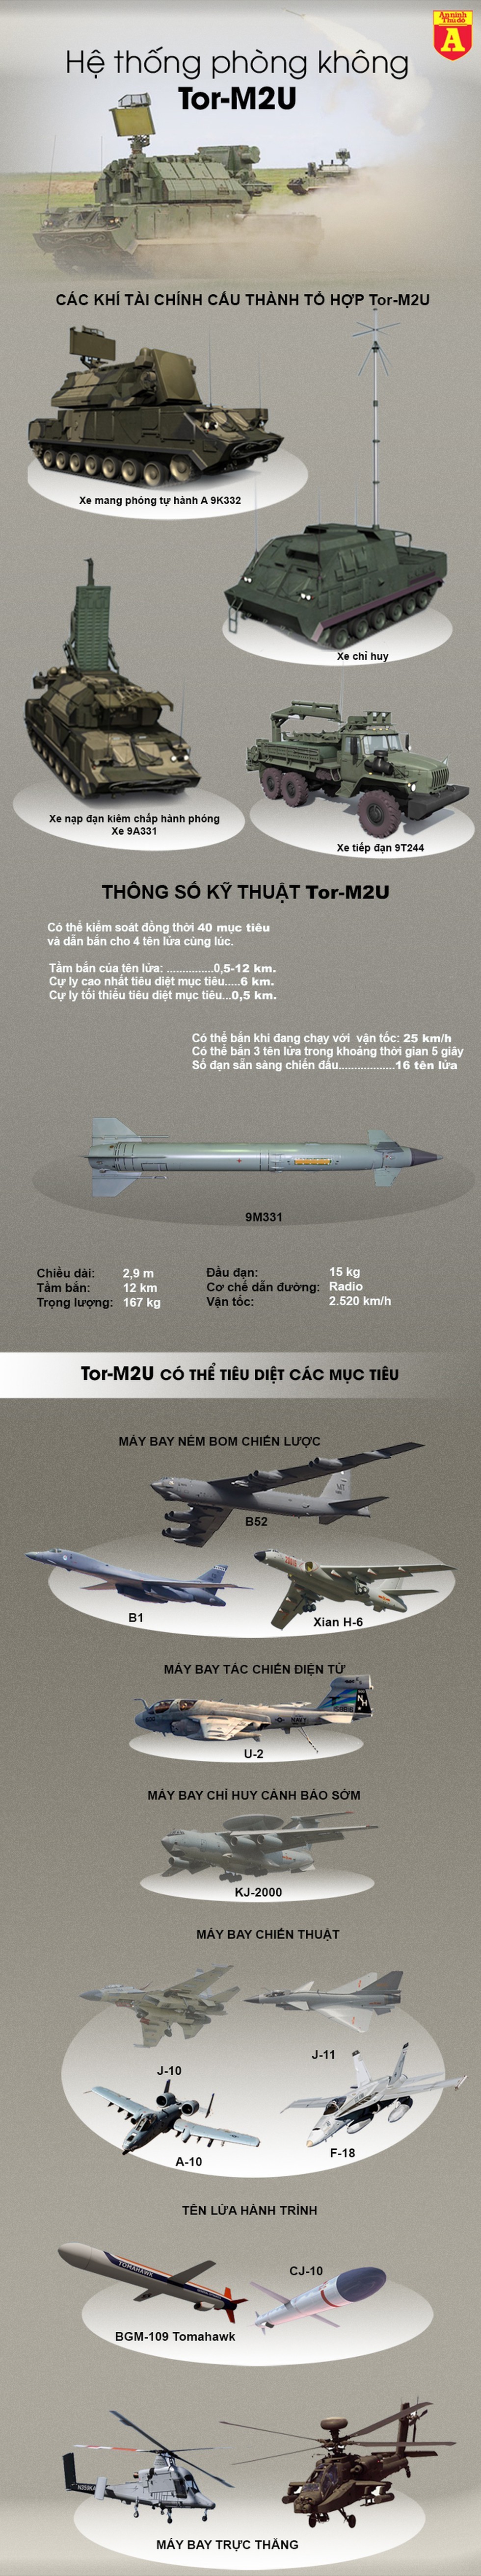 [Info] 'Một tên hai nhạn', sát thủ Tor-M2U Nga bắn cháy UAV của cả Anh lẫn Mỹ ảnh 3